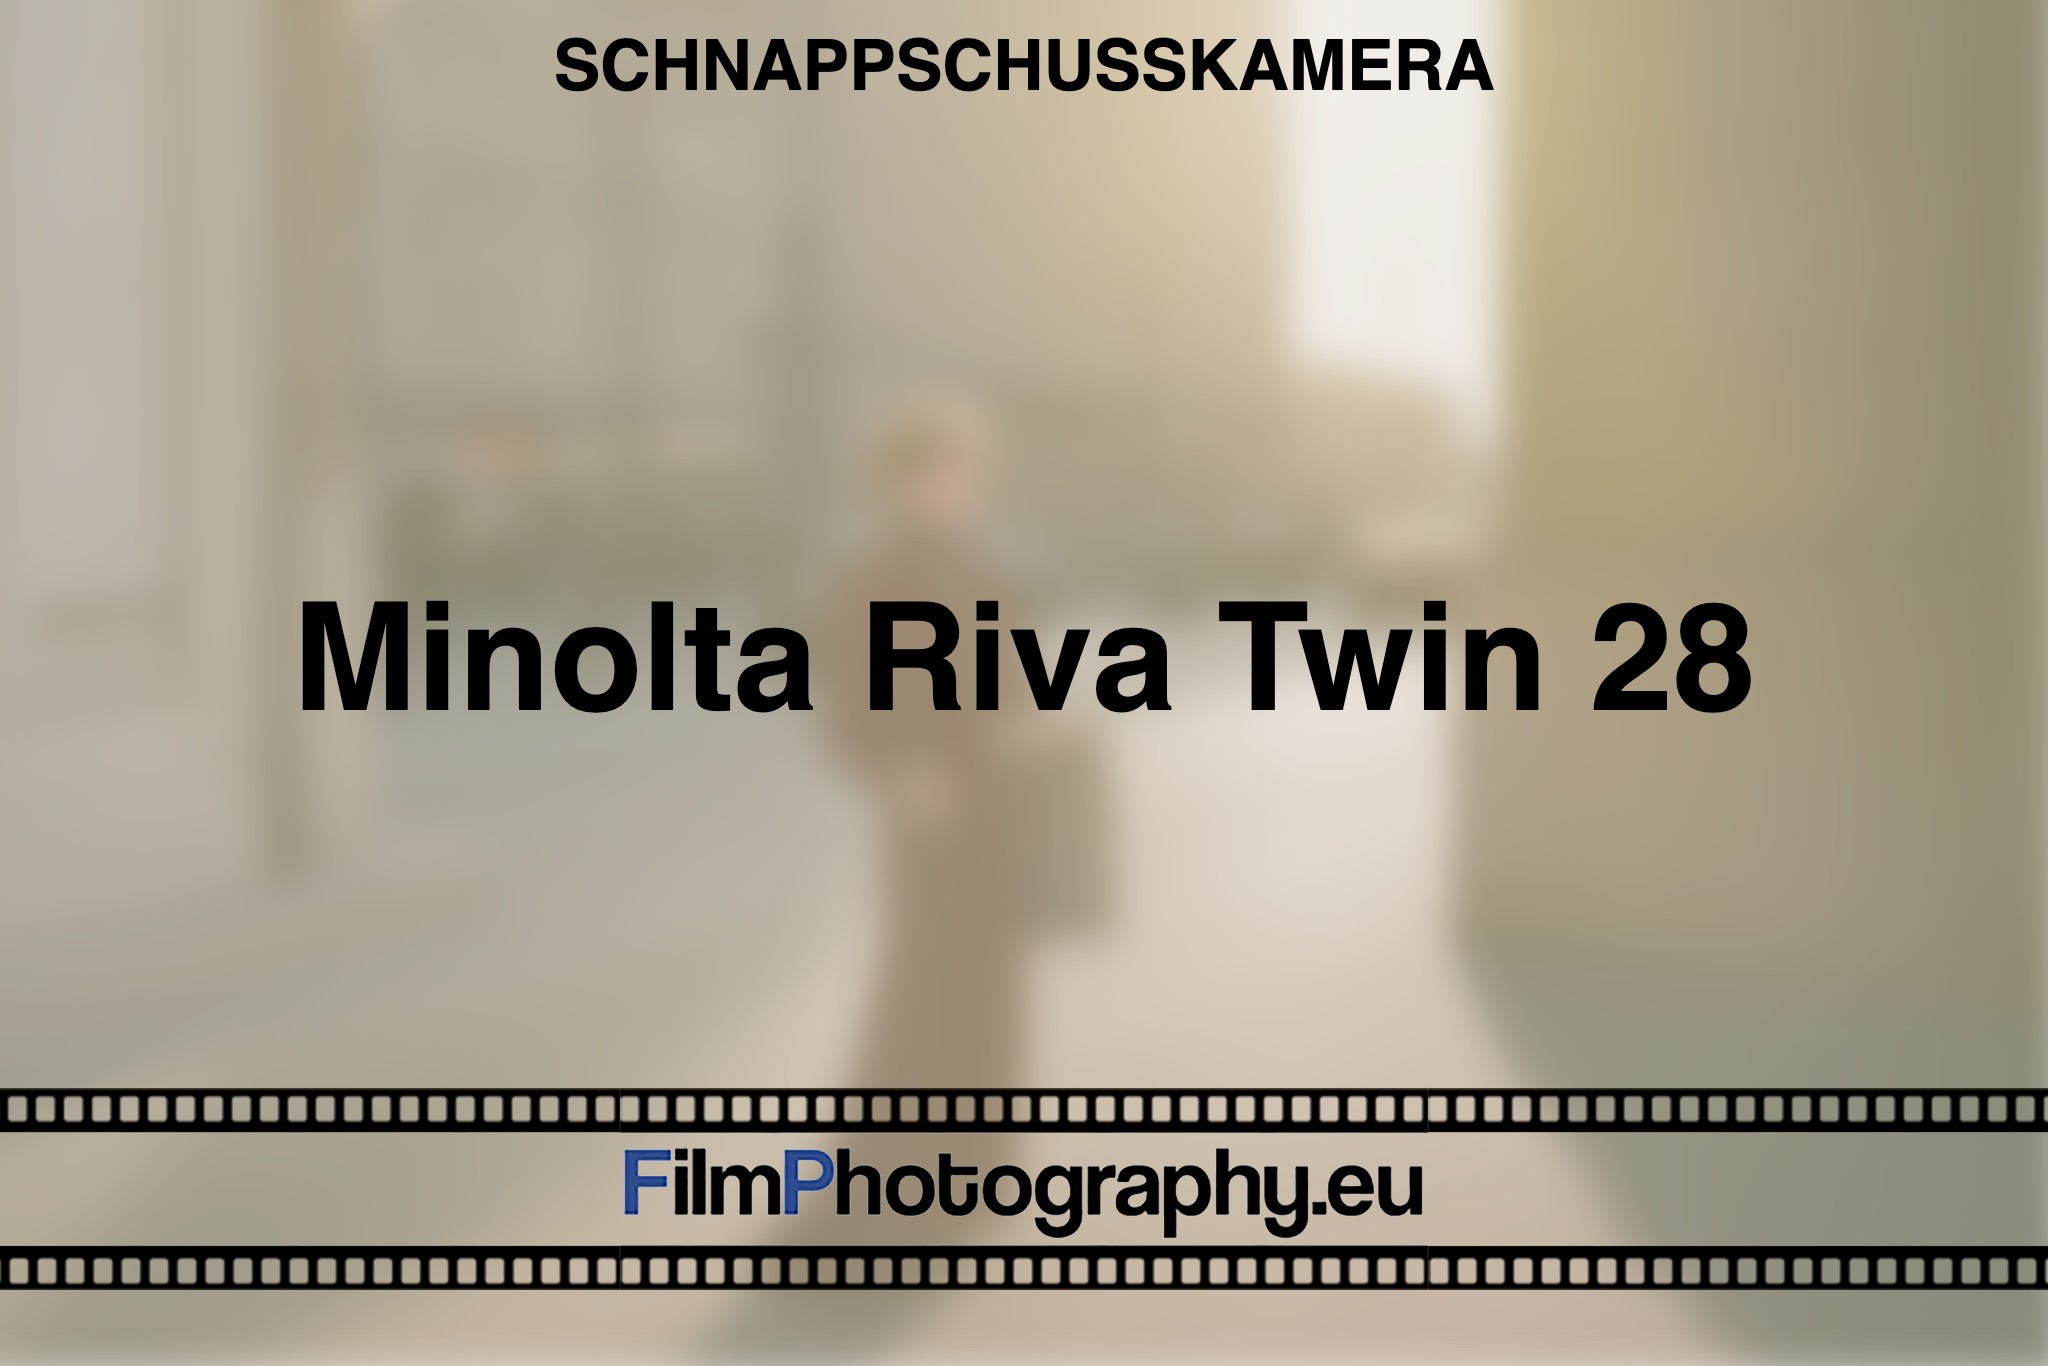 minolta-riva-twin-28-schnappschusskamera-bnv